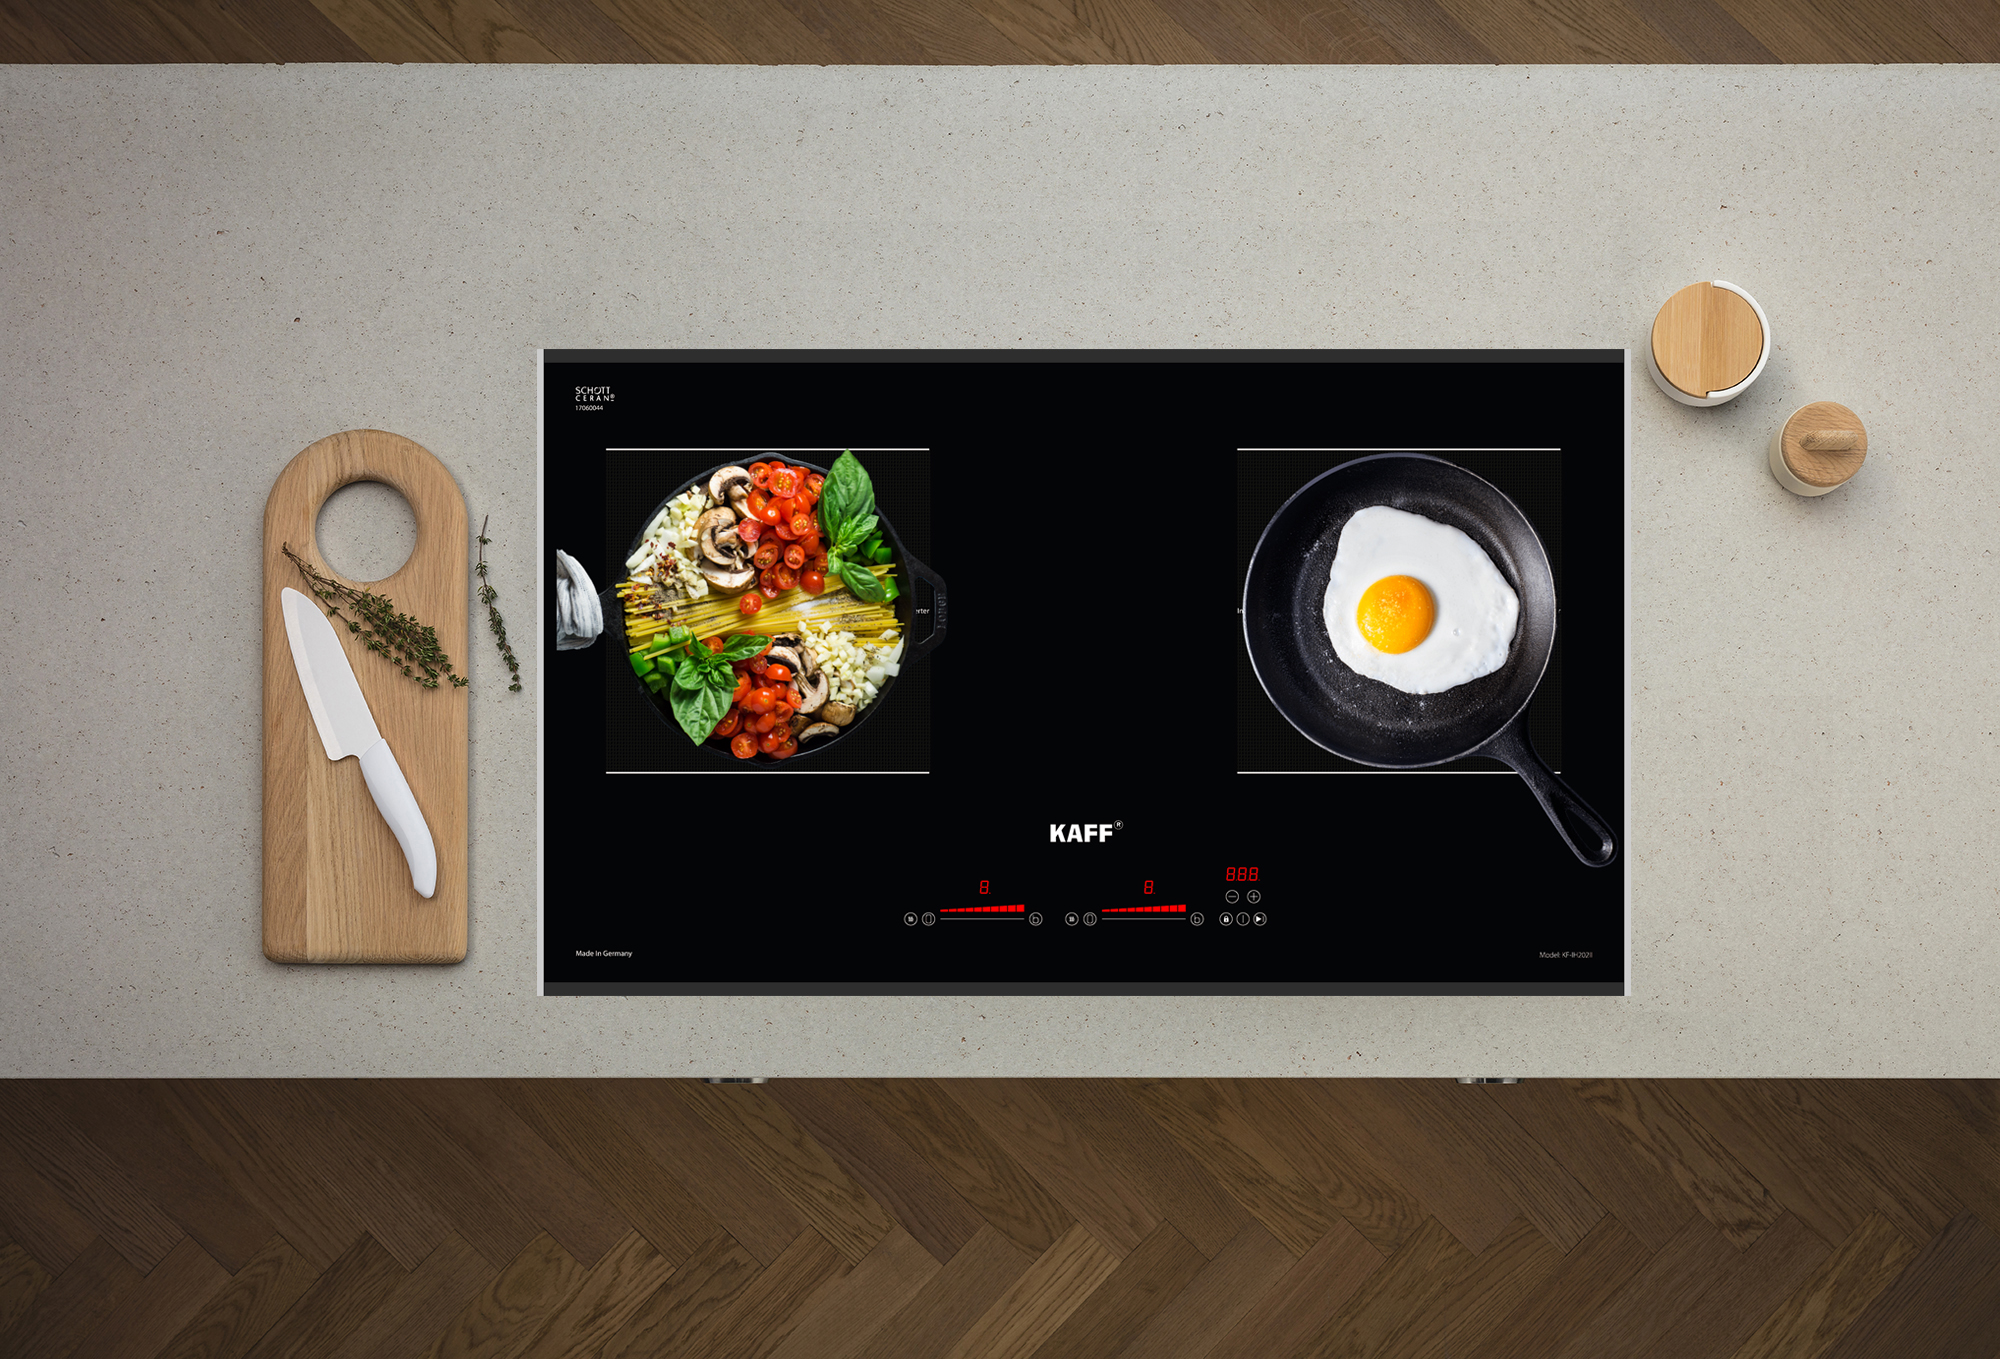 Bếp từ Kaff KF-IH202II thiết kế bảng điều khiển dạng trượt Slider Control độc lập cho từng vùng nấu cùng các tiện ích được tích hợp sẵn. Siêu nhạy, dễ dàng sử dụng và phù hợp với nhiều lứa tuổi